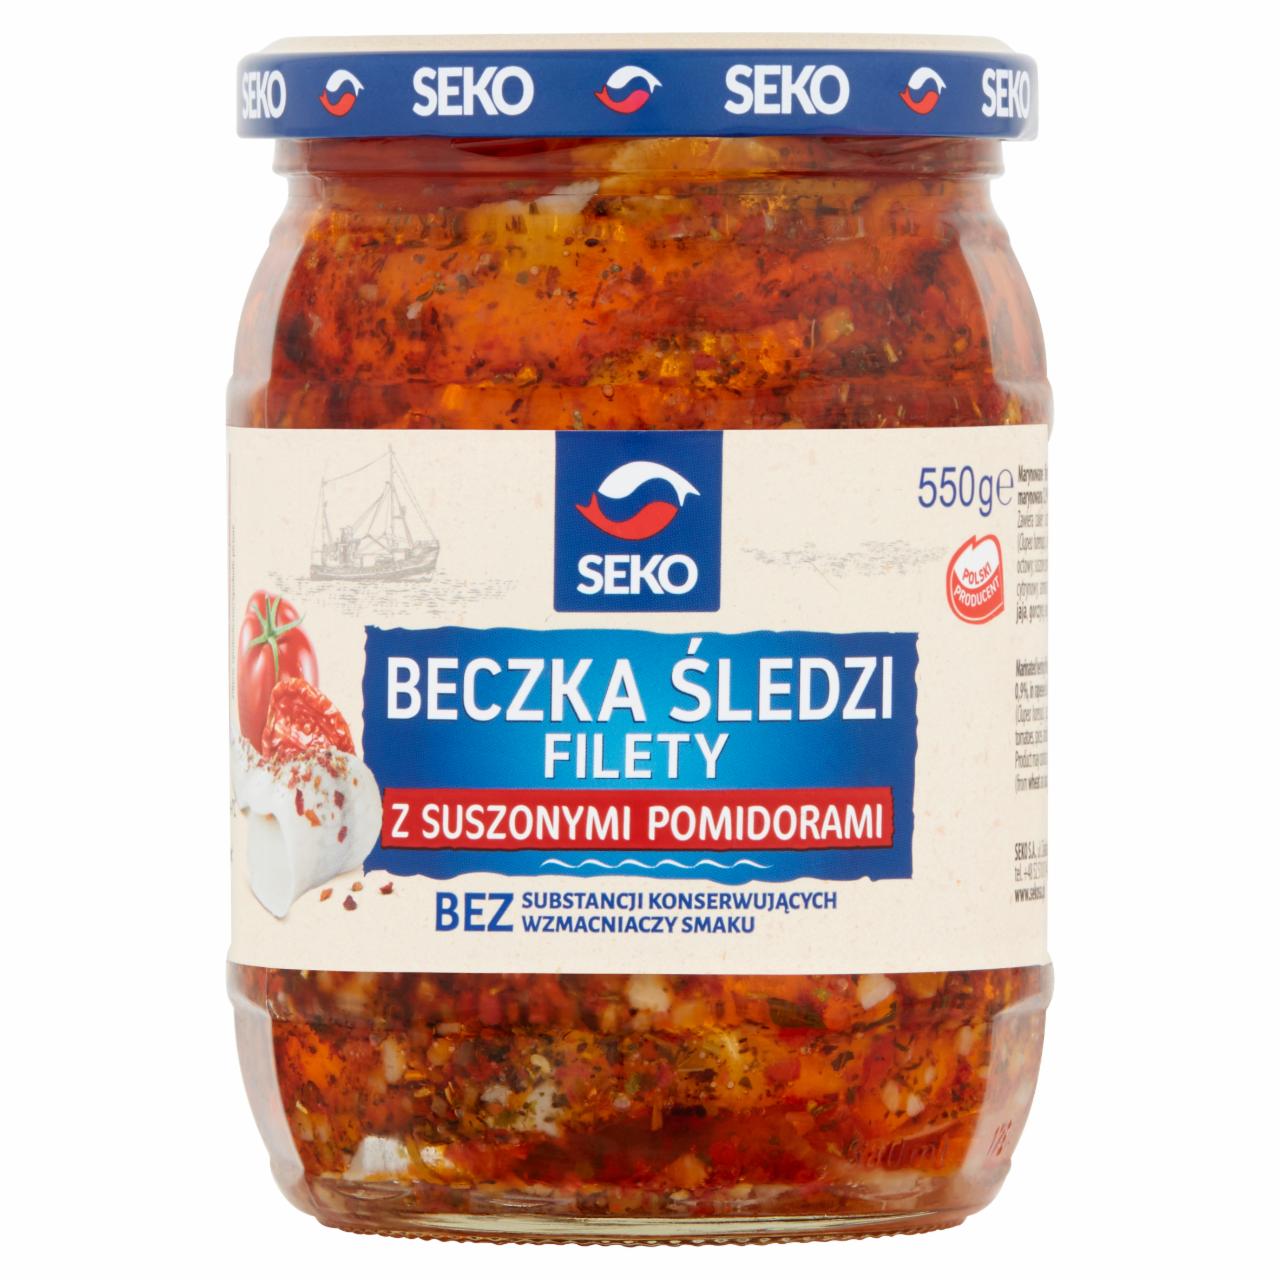 Photo - Seko Beczka śledzi Fillets with Dried Tomatoes 550 g